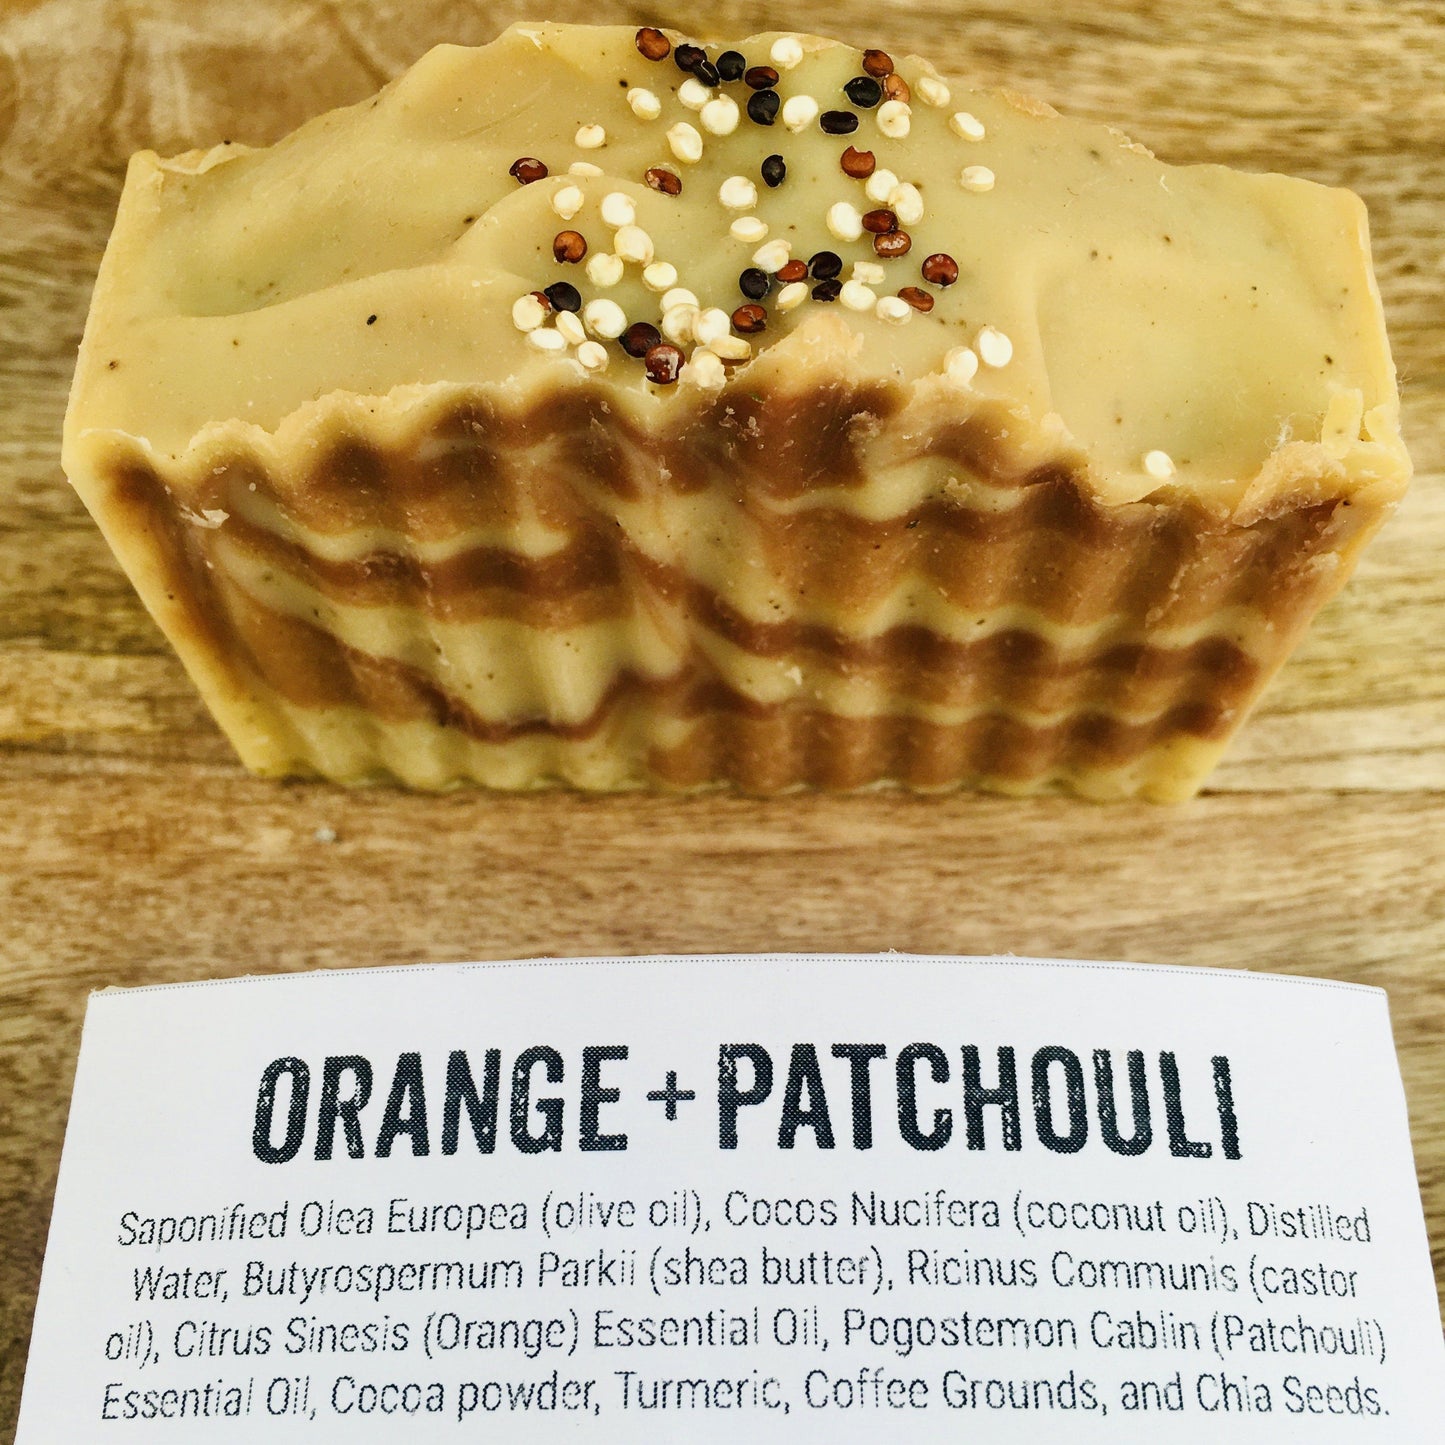 Orange Patchouli Artisanal Soap Bar Bath and Body Lambton Valley Default Title Prettycleanshop